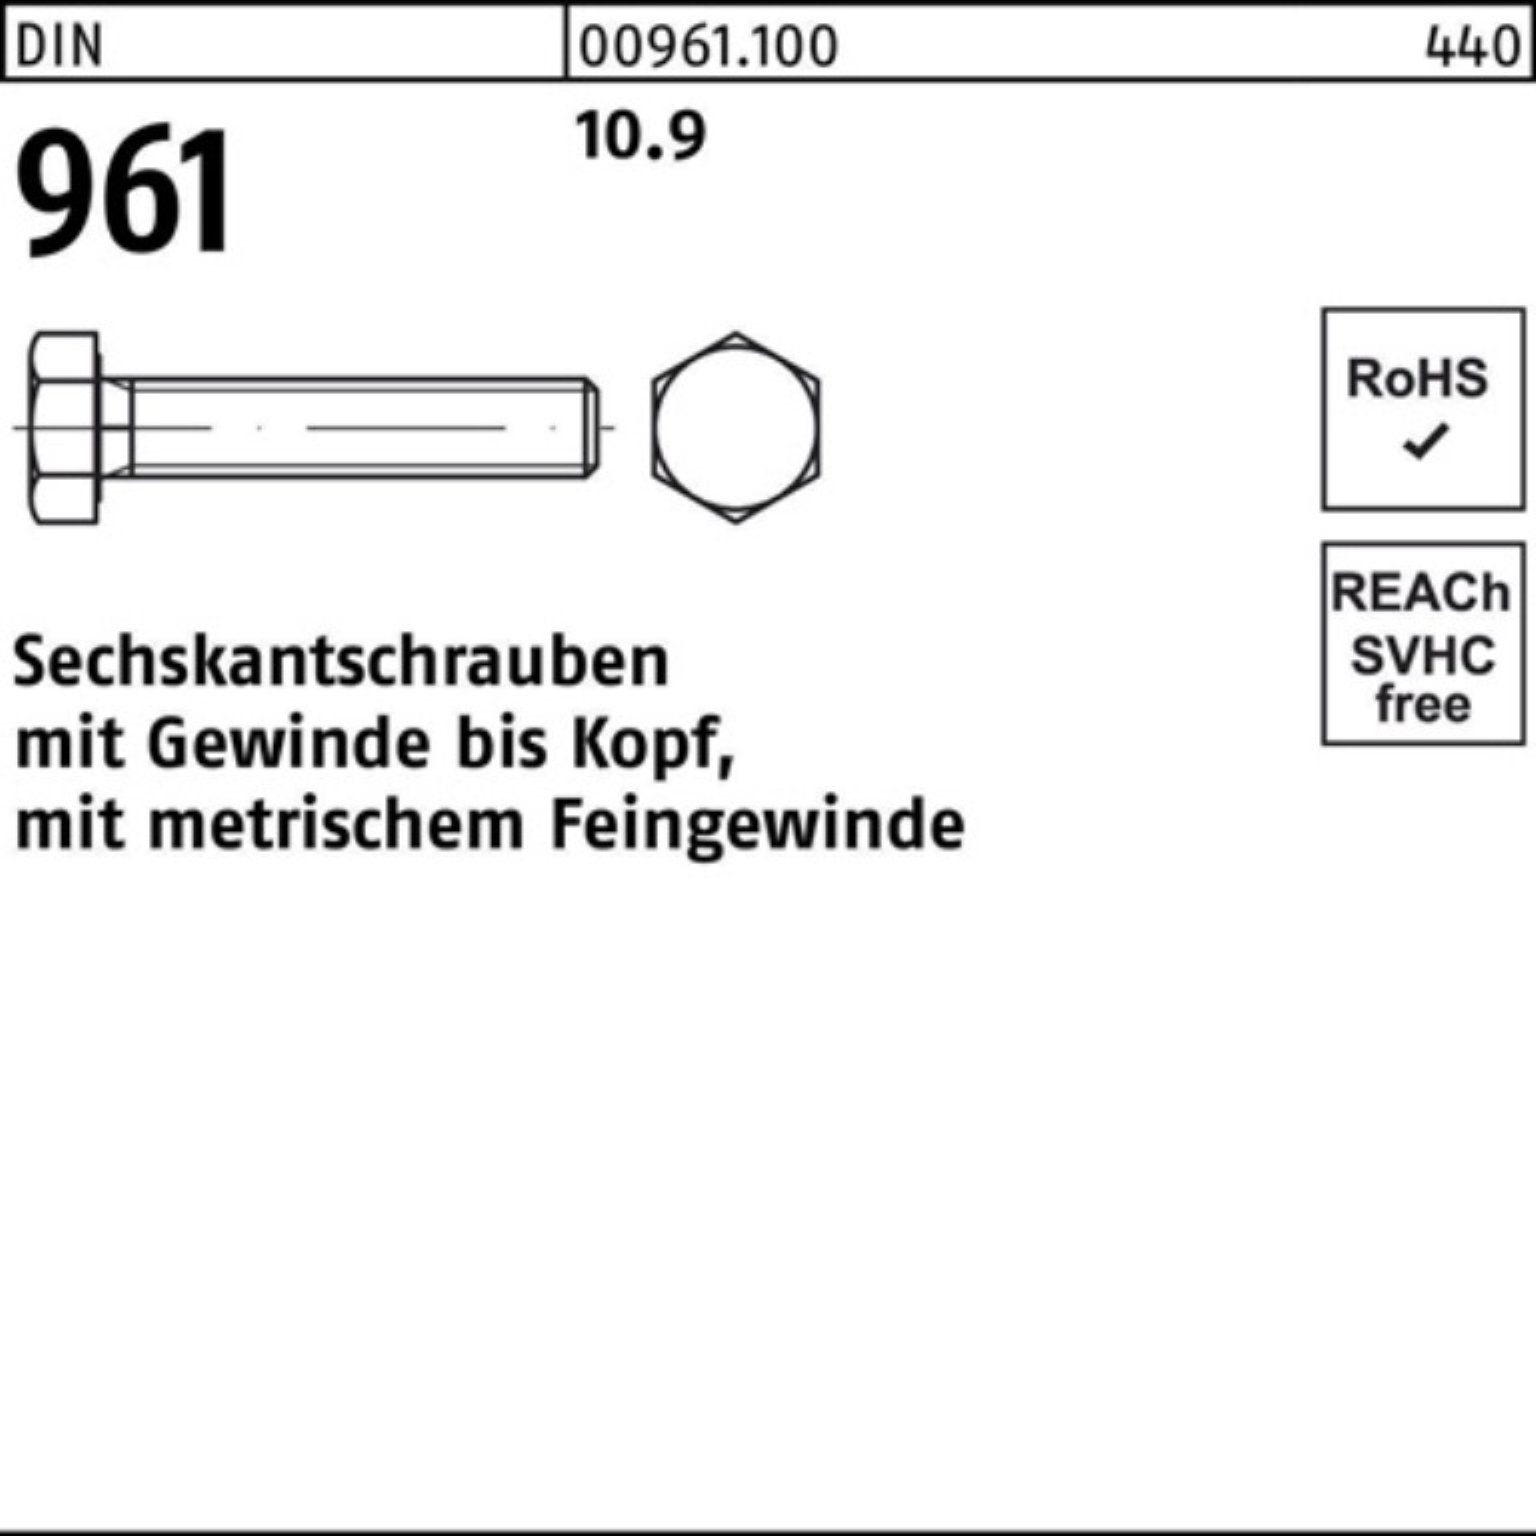 VG Sechskantschraube Stück Pack DIN 45 961 100er Reyher 50 10.9 Sechskantschraube M18x1,5x DIN